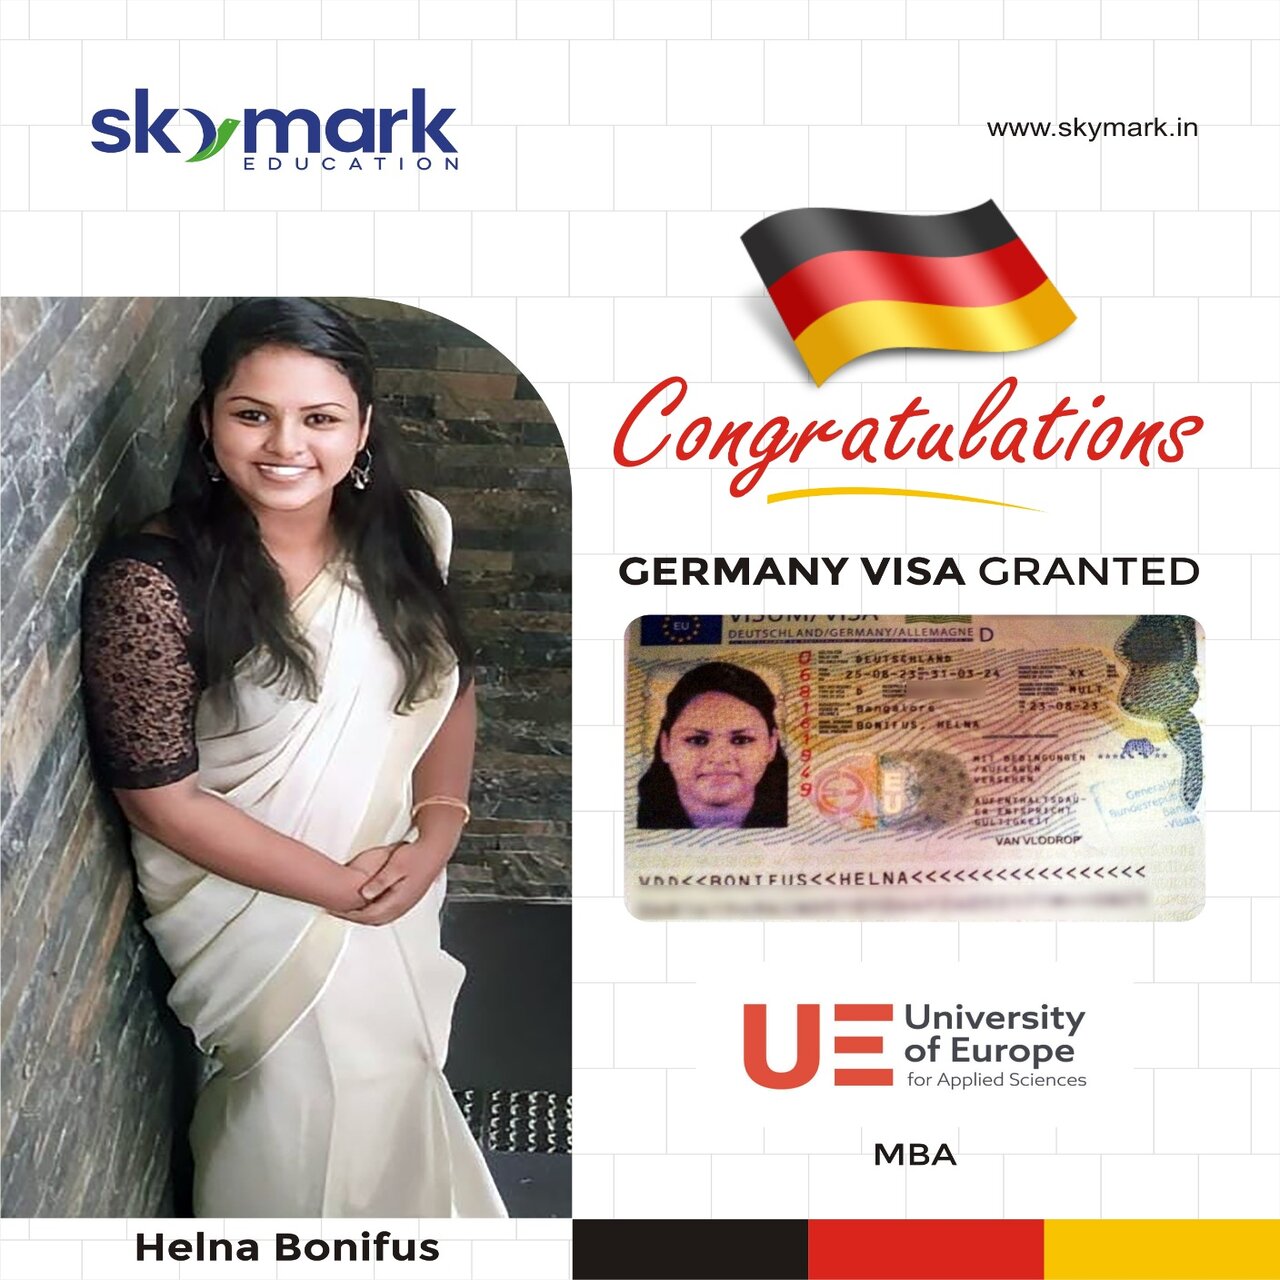 German Visa Granted